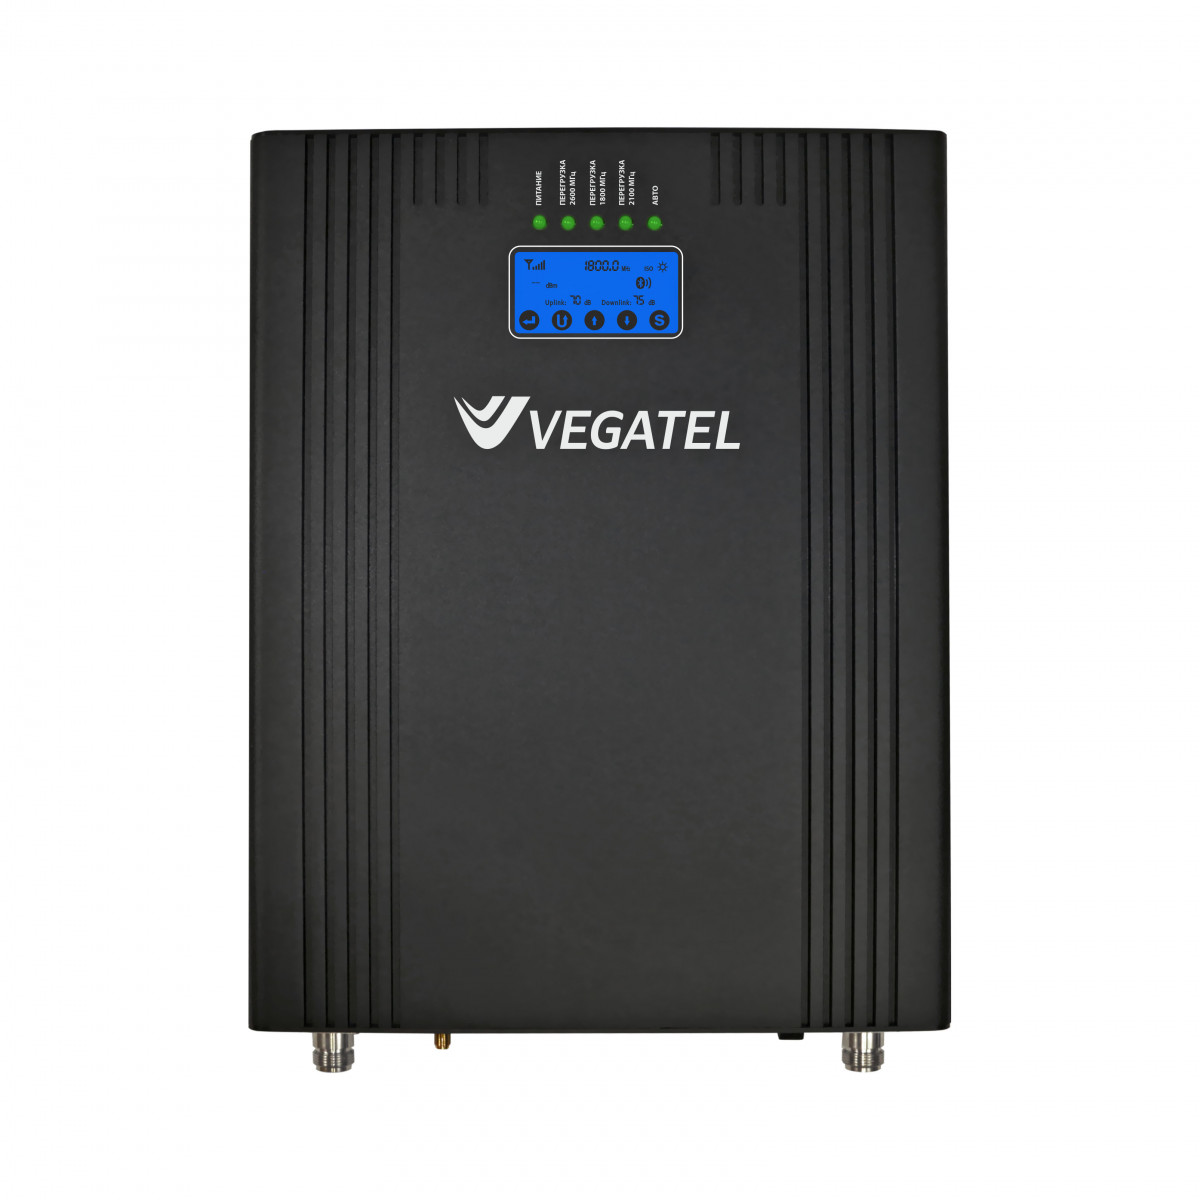 Детальное изображение товара "Репитер Vegatel VT3-1800/2100/2600" из каталога оборудования Антенна76